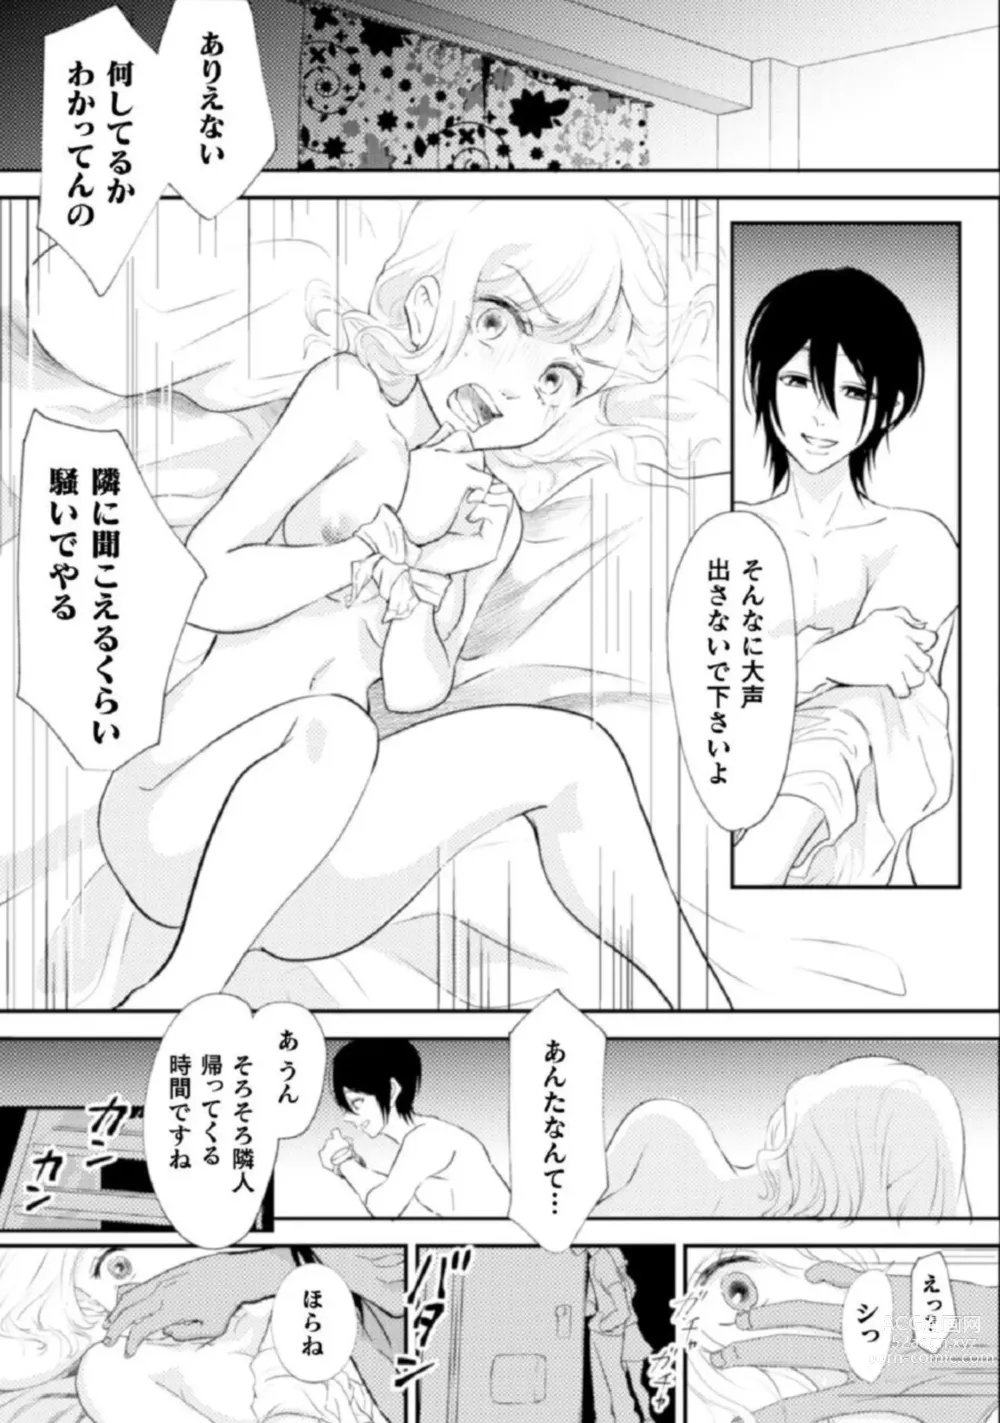 Page 21 of manga Shokorashukureansorojī Ibitsuai ～ Yandere Kareshi no Omoi ai ni Kakowarete ～Vol.2